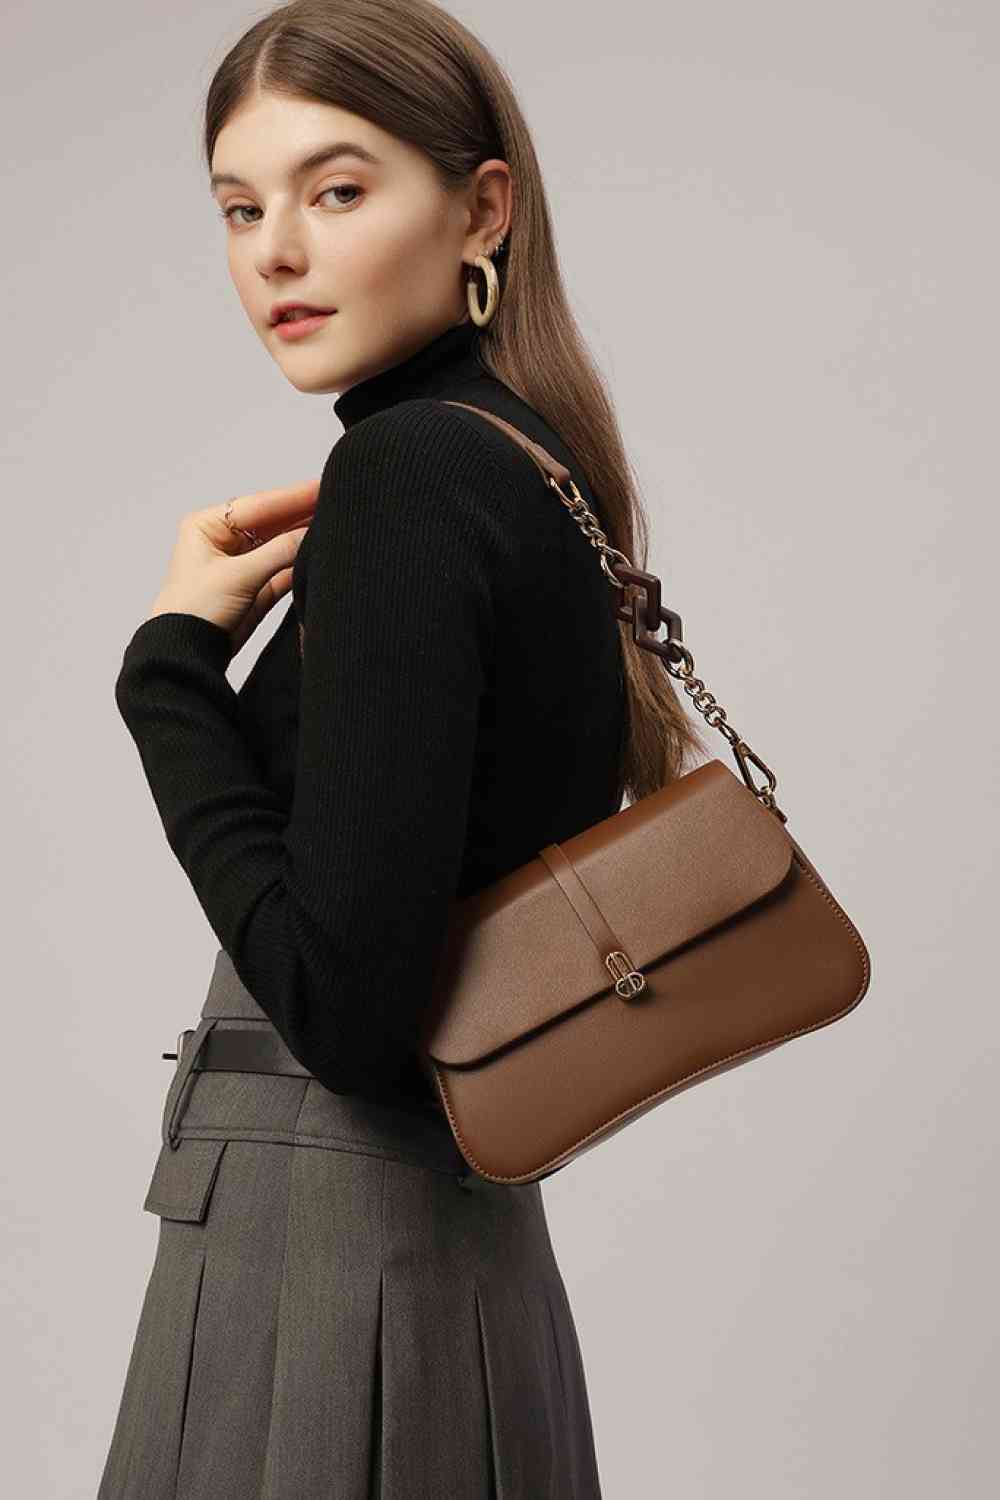 TEEK - Adored Away Handbag BAG TEEK Trend   